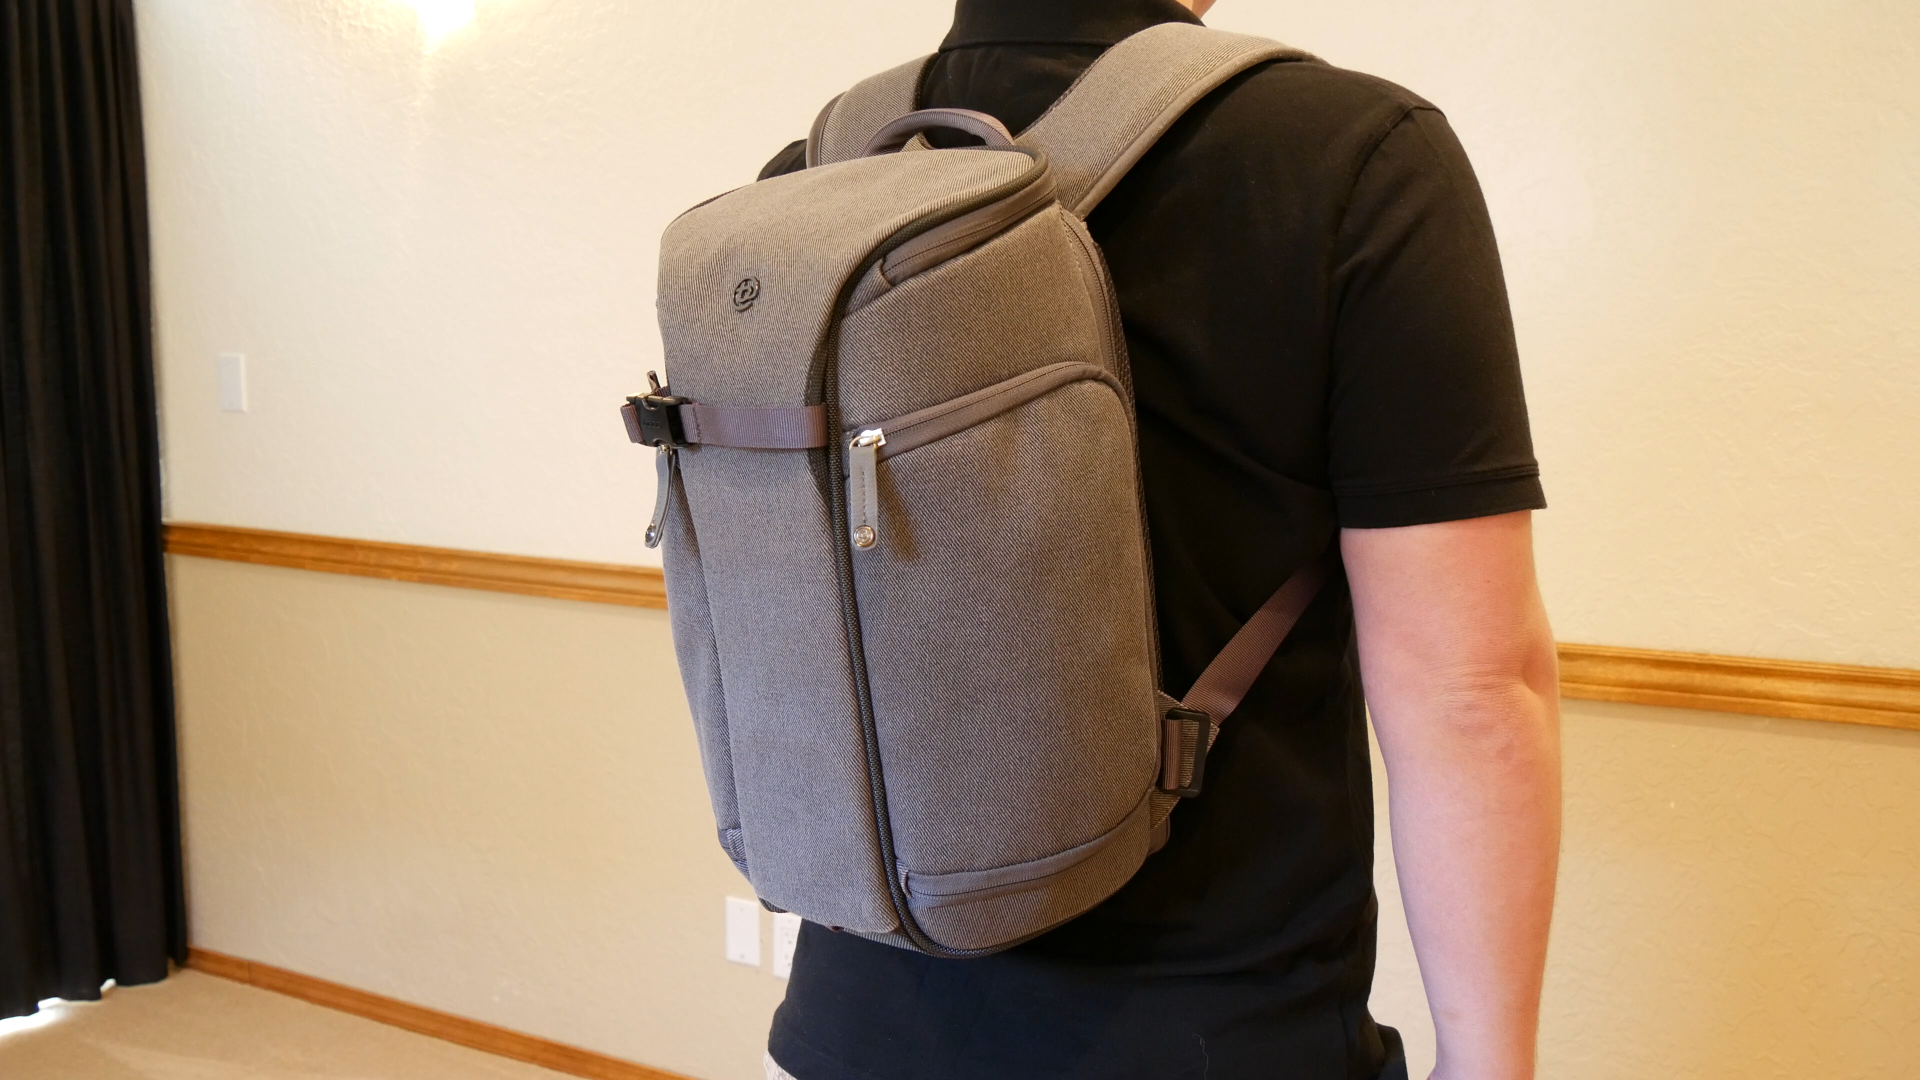 booq slimpack review camera backpack slim08